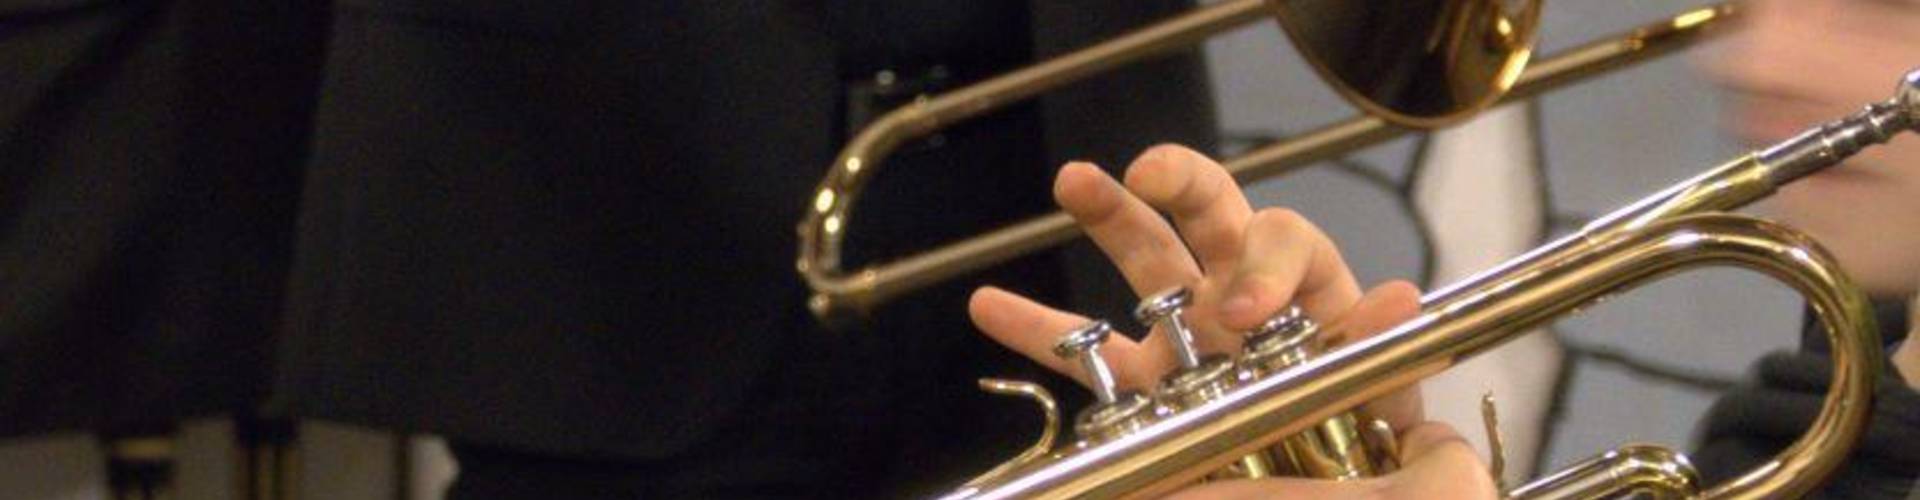 Im Vordergrund sieht man eine Trompete und eine Hand, die das Instrument spielt. Im Hintergrund ist eine Person in schwarzer Kleidung bis zum Oberkörper zu sehen.